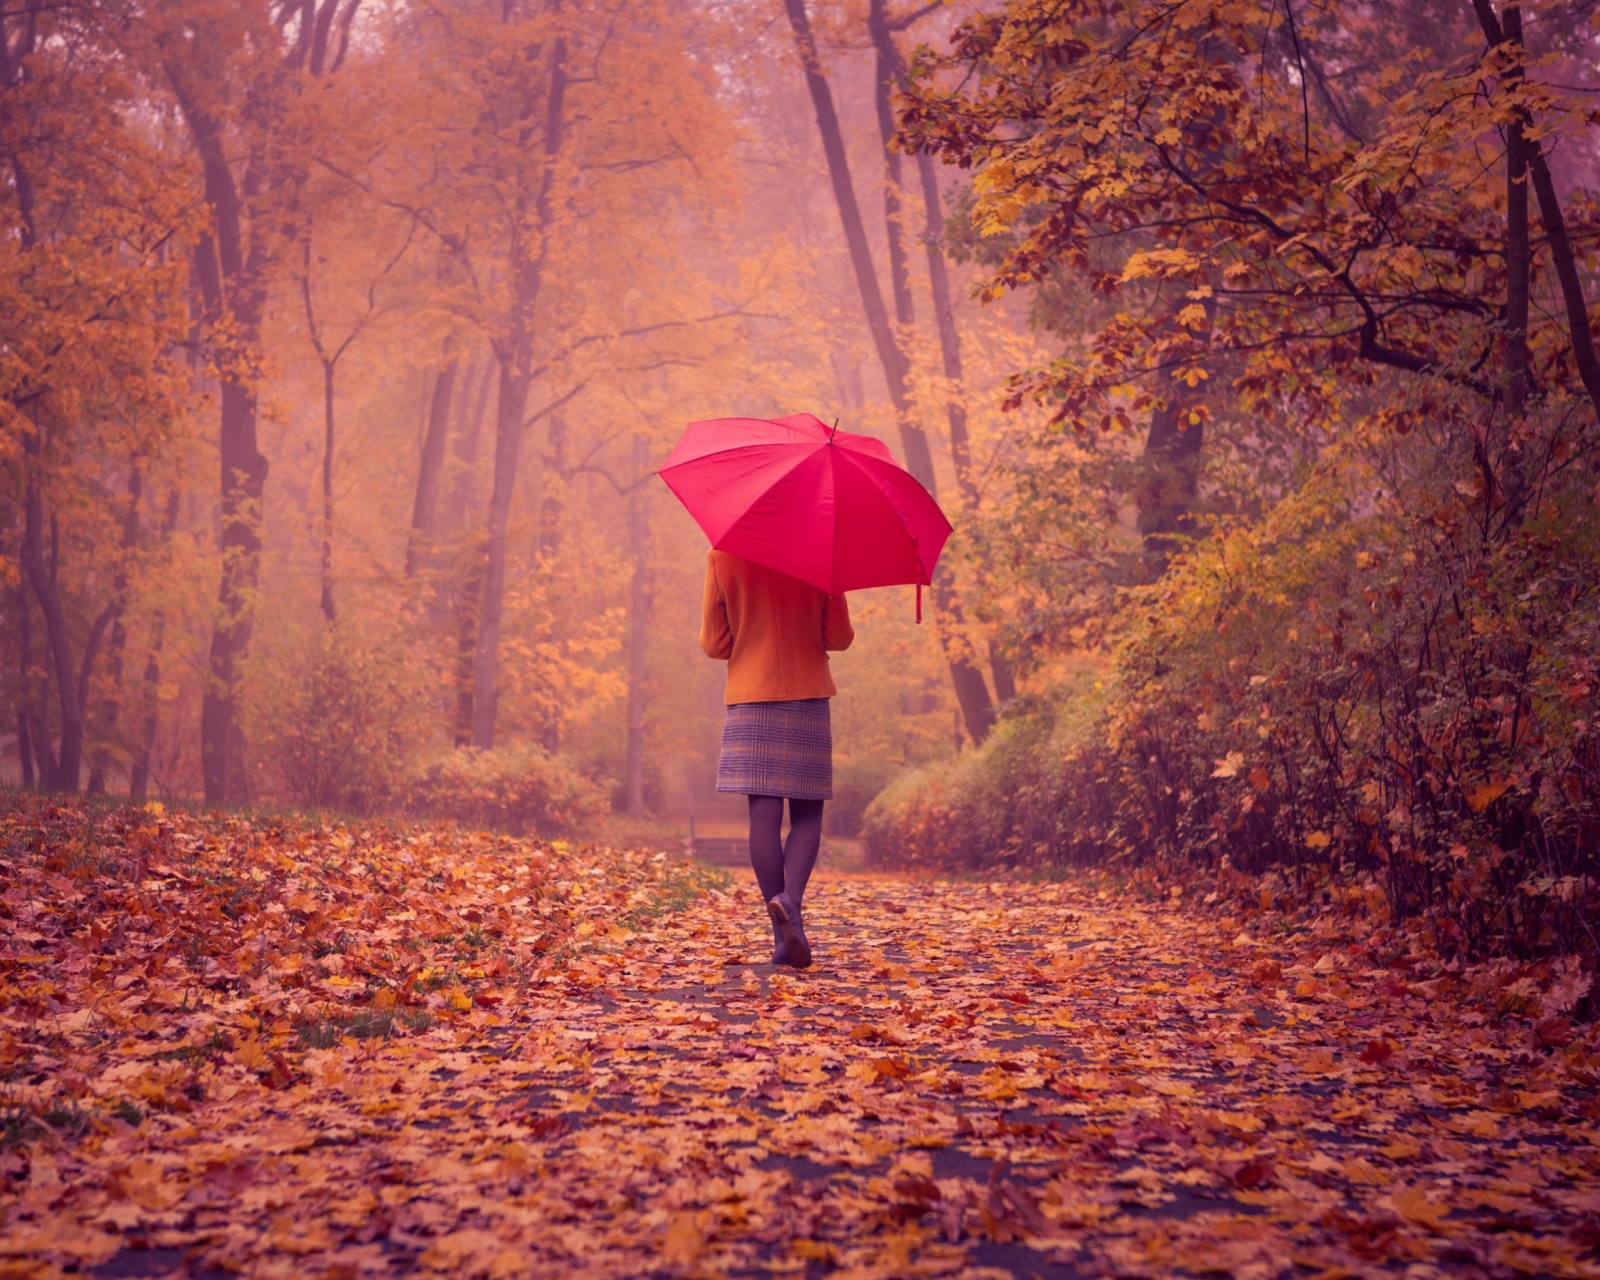 Обои Autumn Walk With Red Umbrella 1600x1280